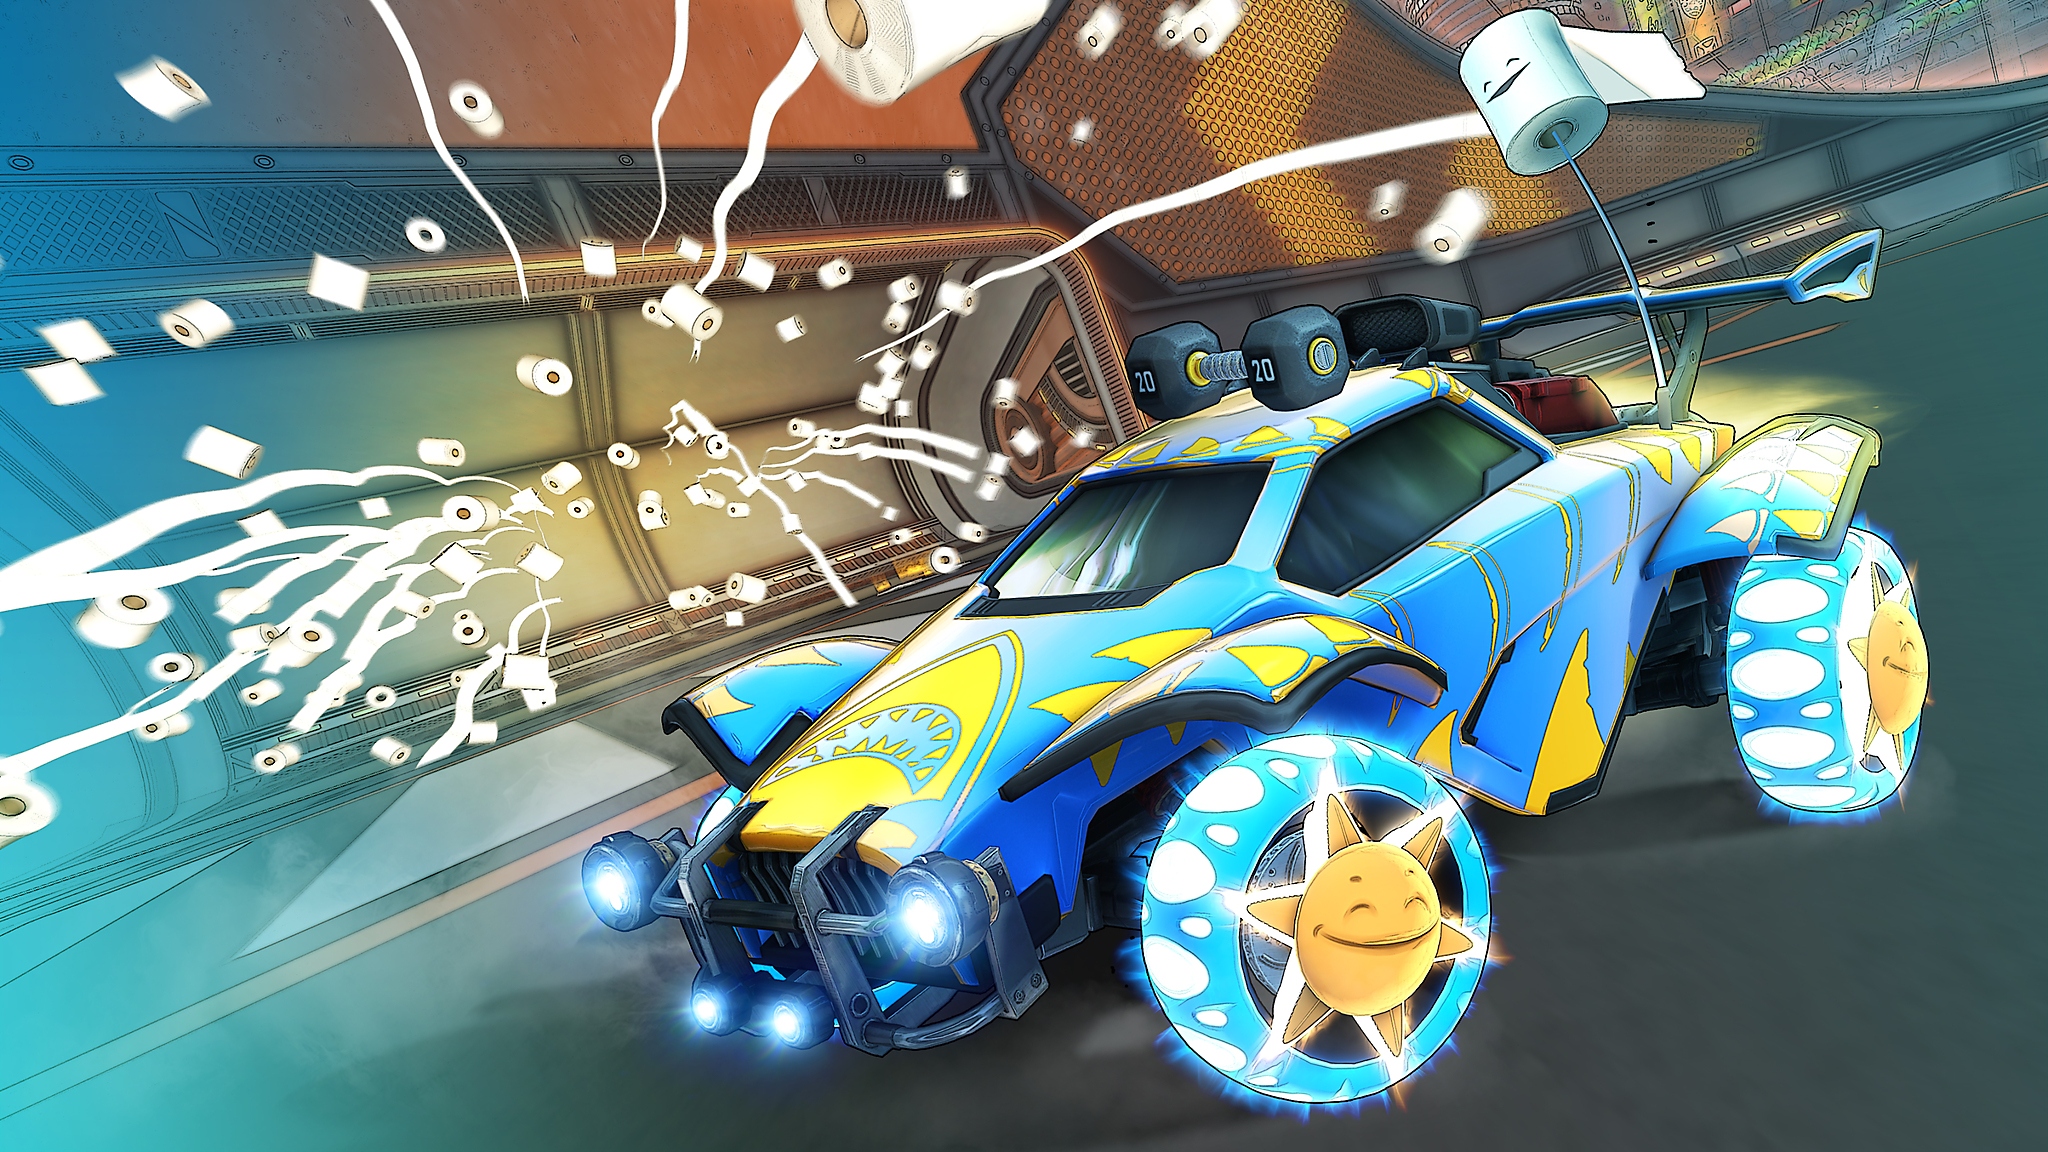 Captura de pantalla de la temporada 6 de Rocket League que muestra un auto azul con amarillo con varios rollos de papel higiénico lanzados en el aire